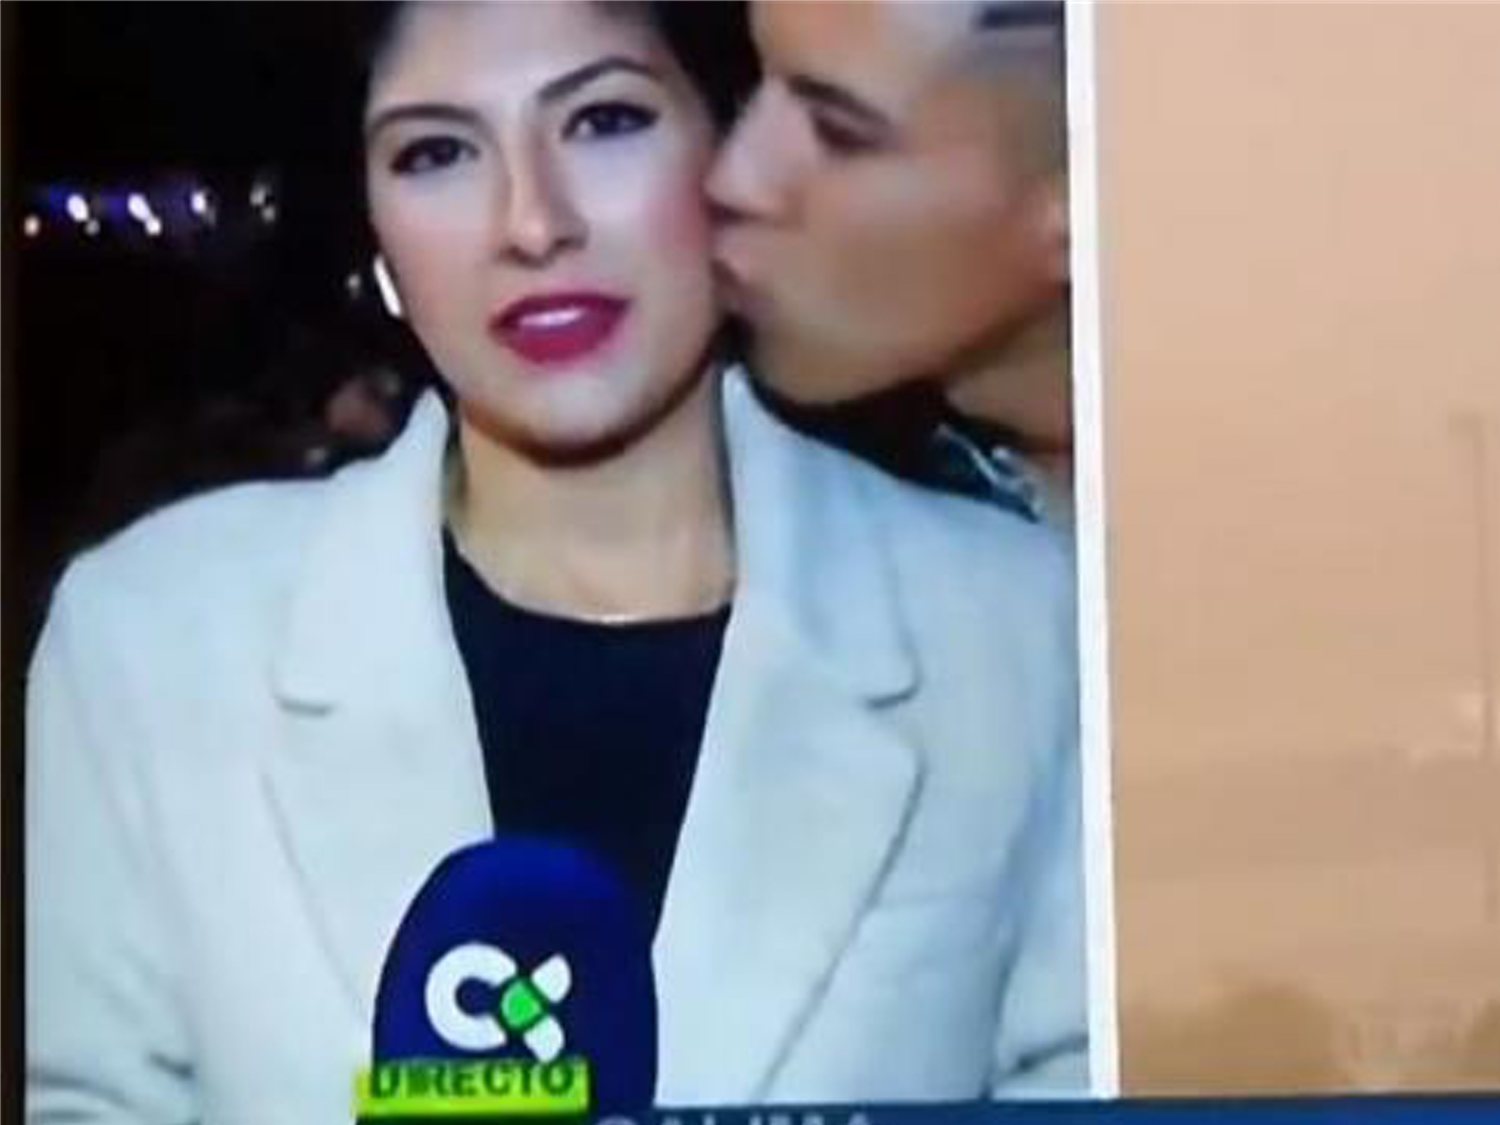 Multa y orden de alejamiento para el joven que besó a una periodista canaria en directo